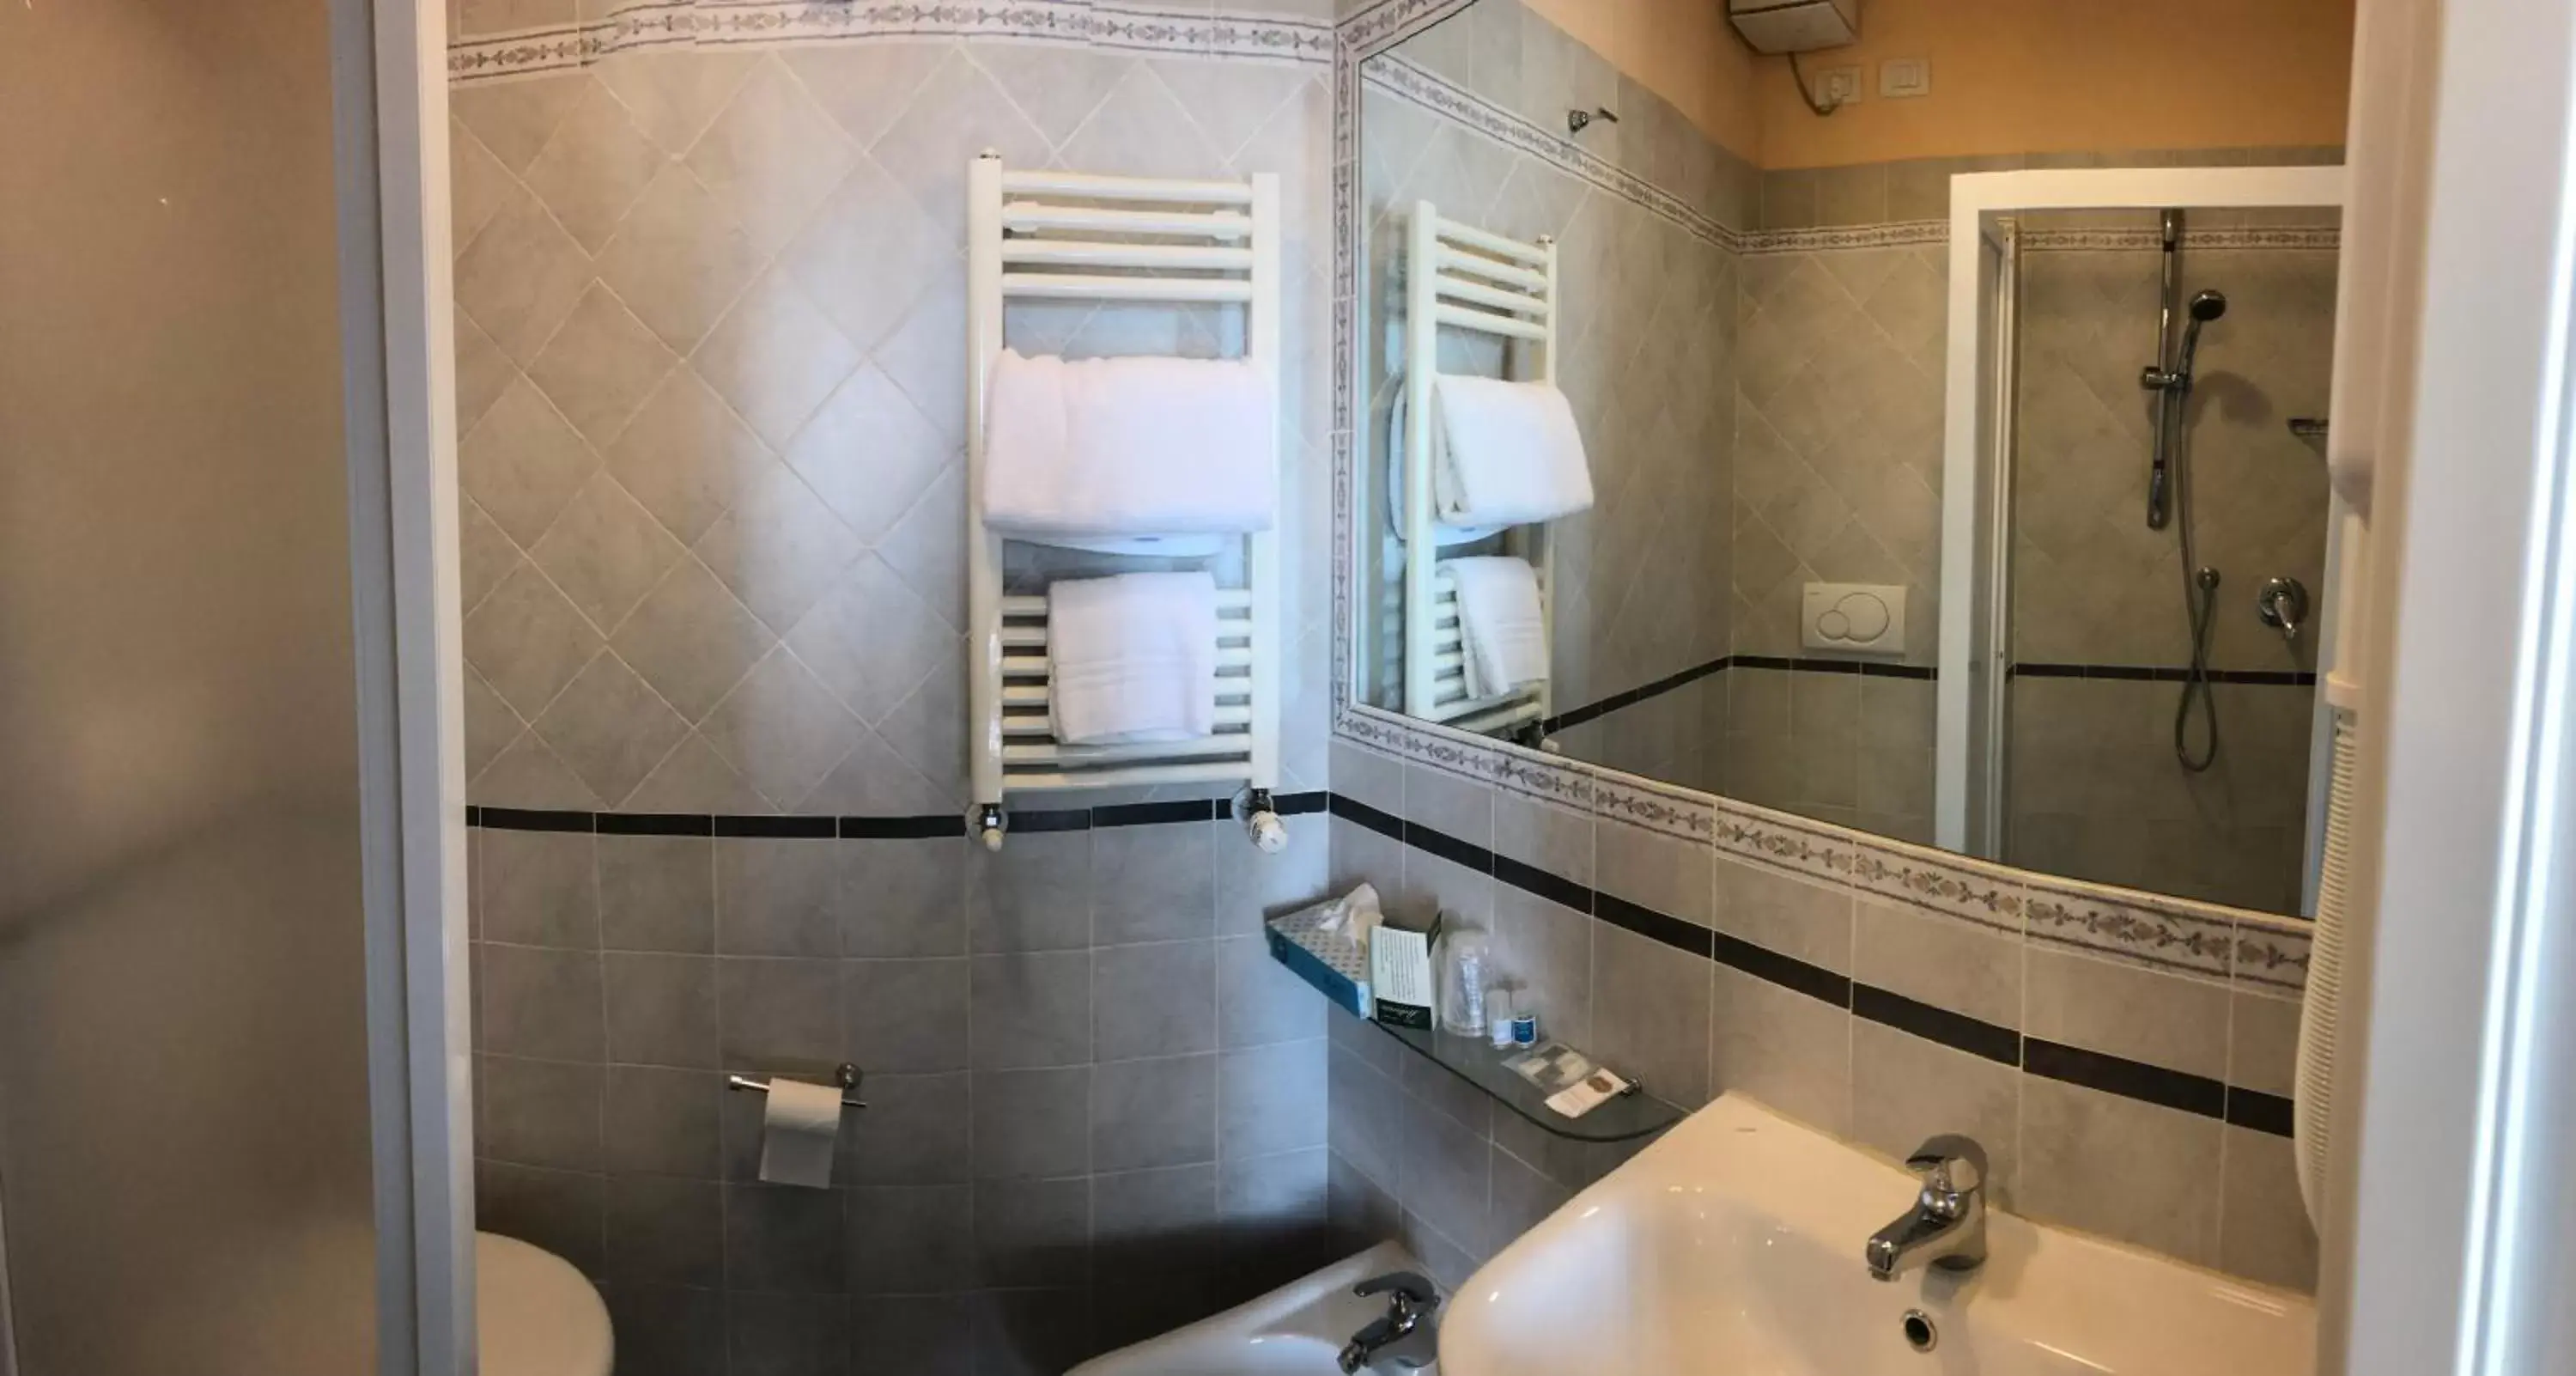 Bathroom in Bellavista Impruneta